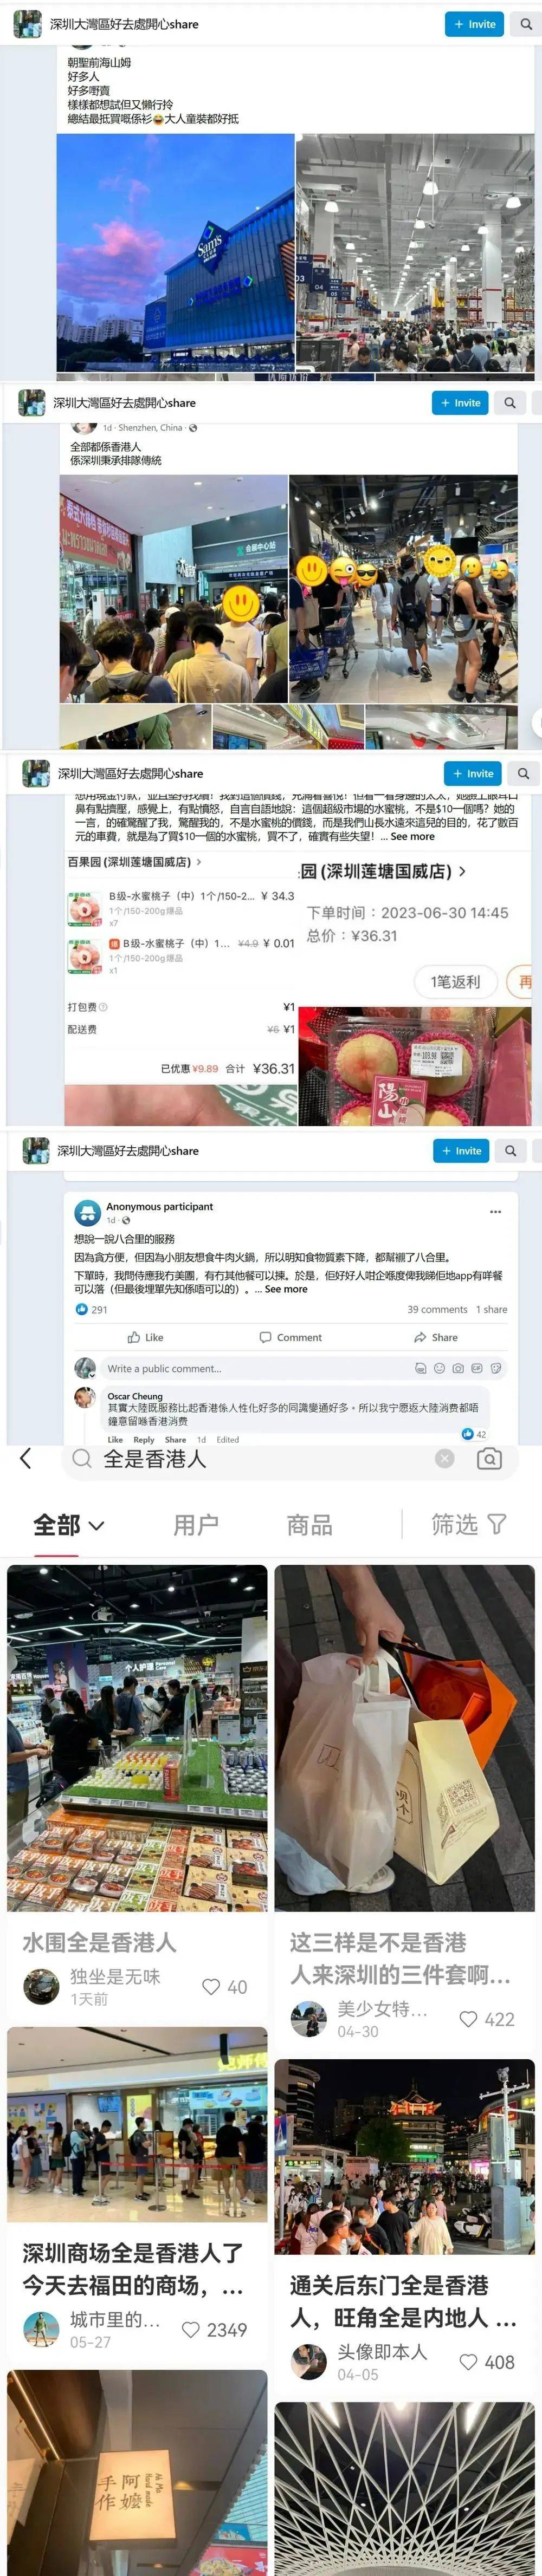 “香港赚钱深圳花”，反向代购怎么火了